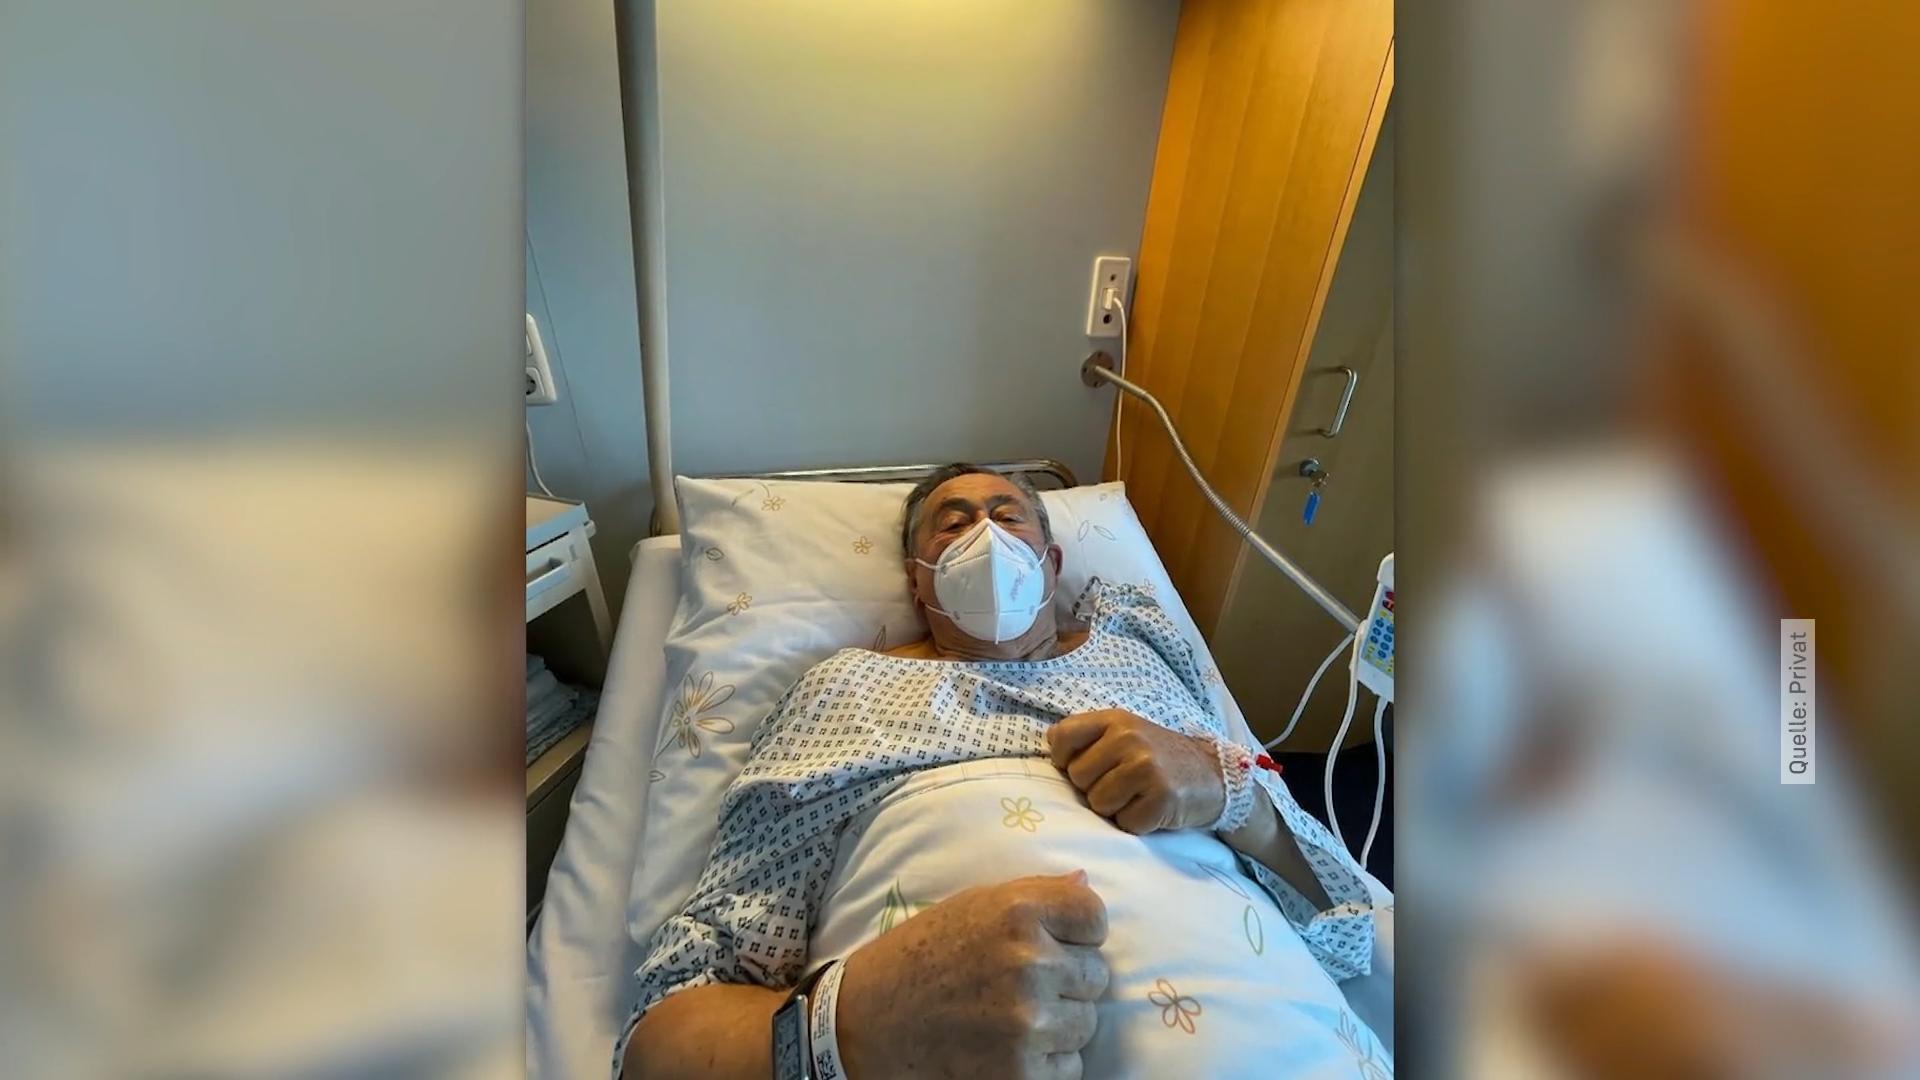 Darmblutungen: Richard Lugner liegt im Krankenhaus Direkt nach seinem Malediven-Urlaub